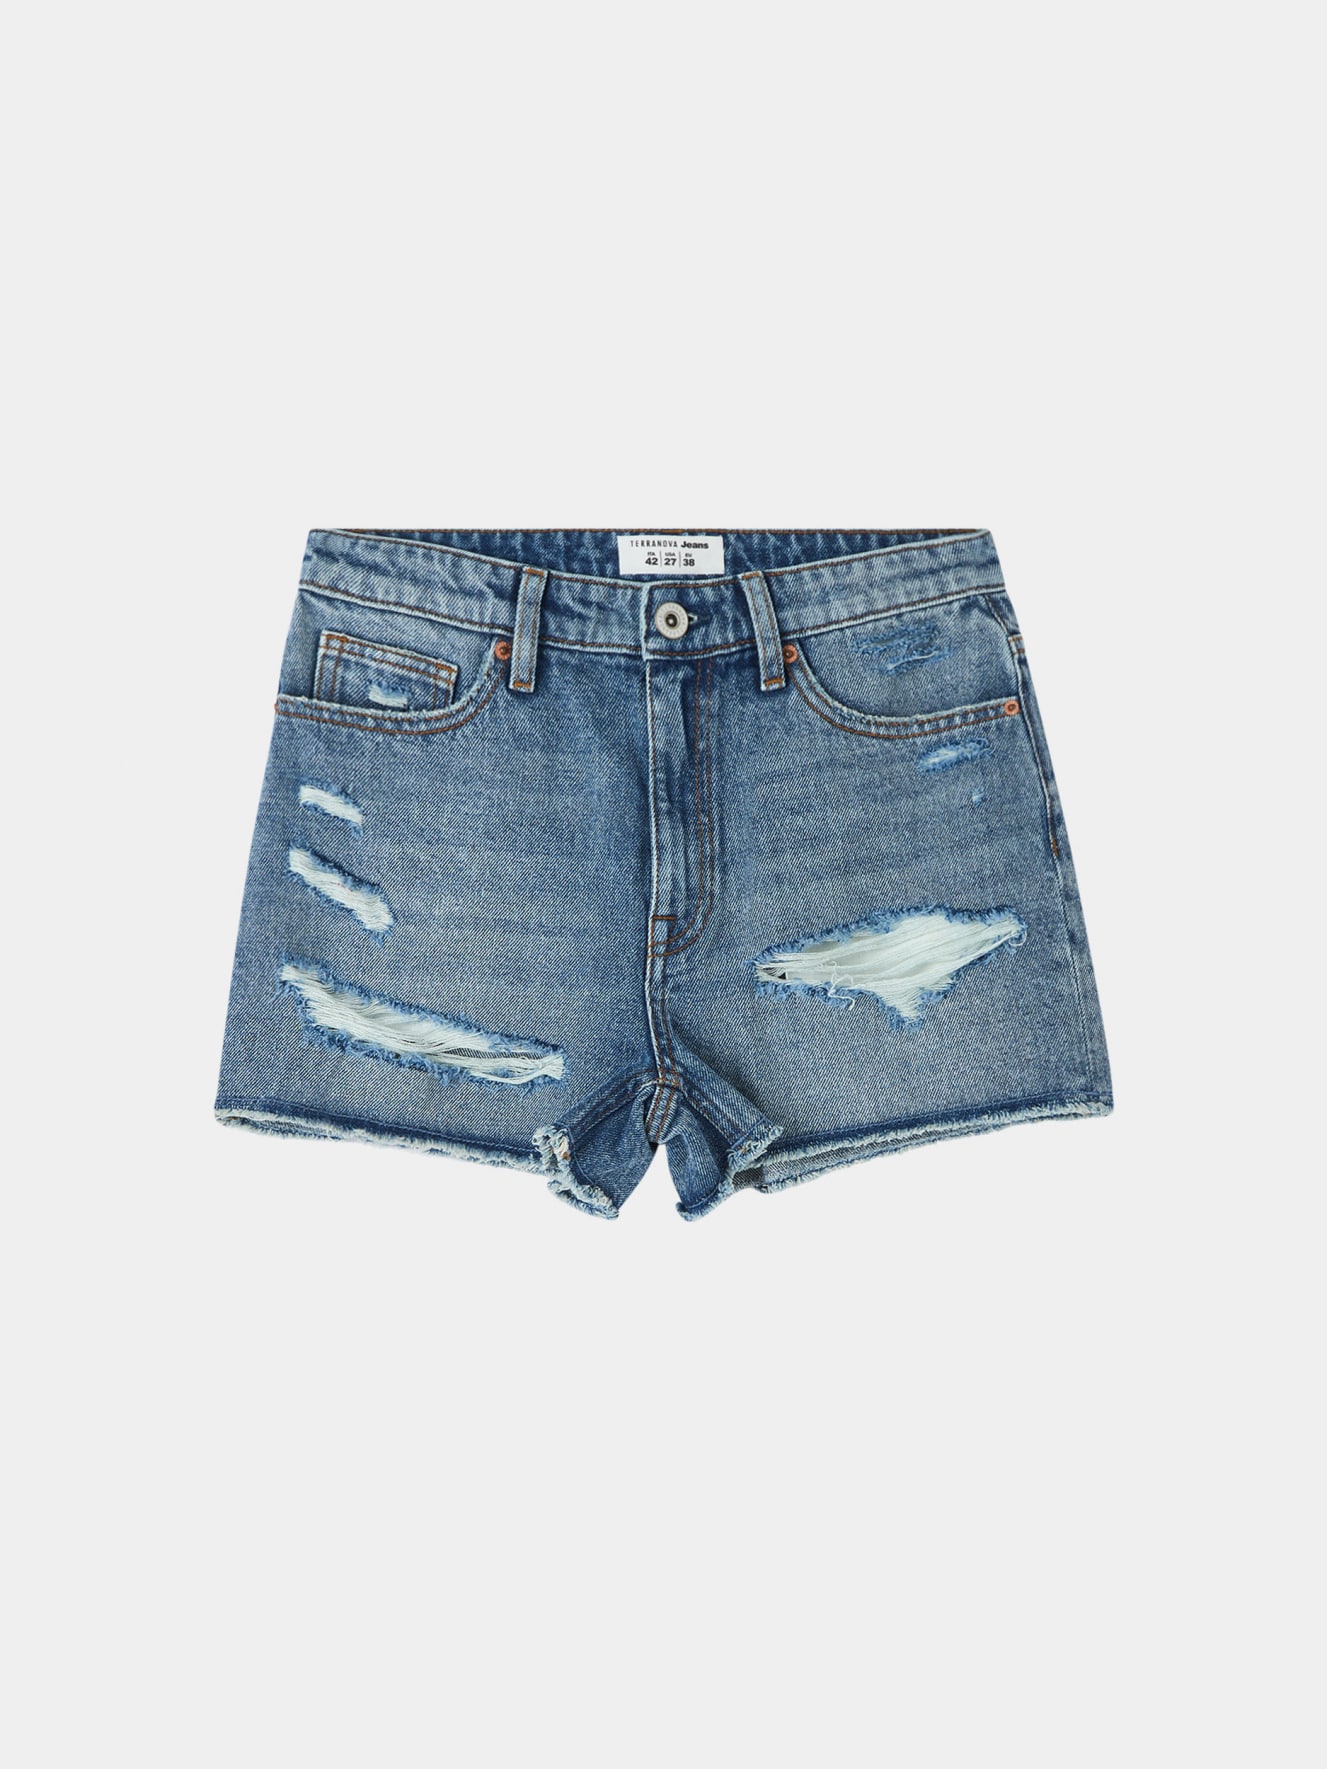 Jeans cortos Mujer Terranova